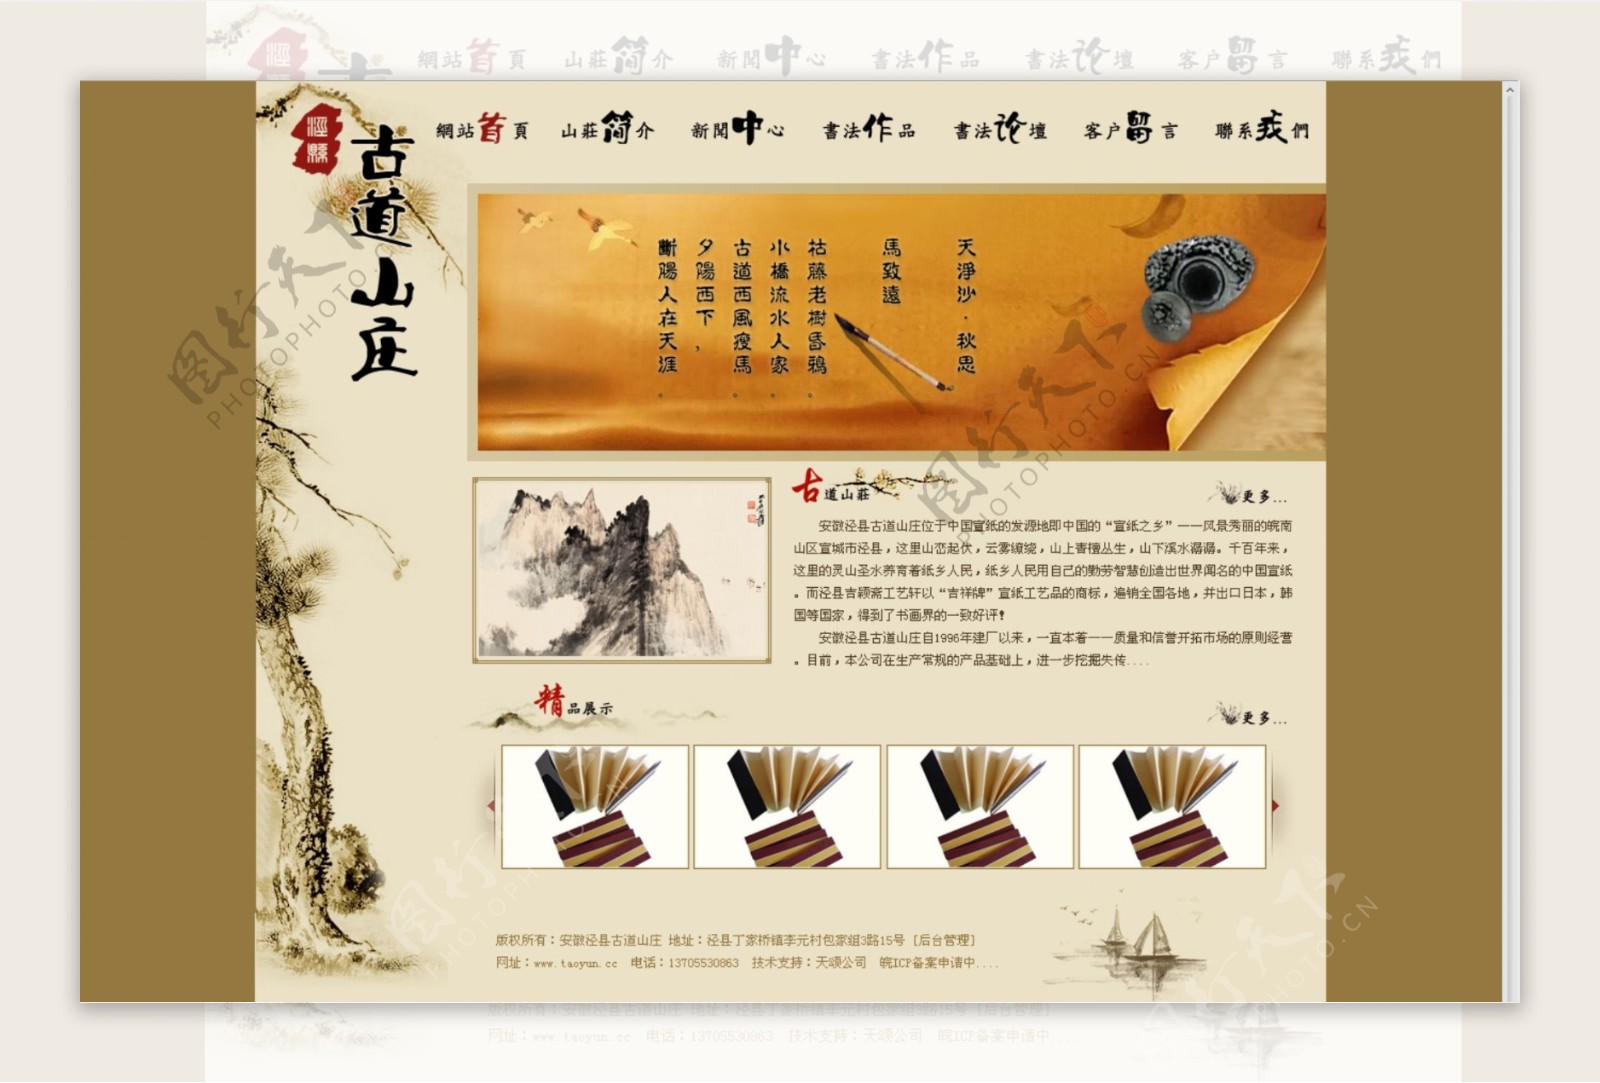 黄色古典中国风艺术国画网站网页模板图片